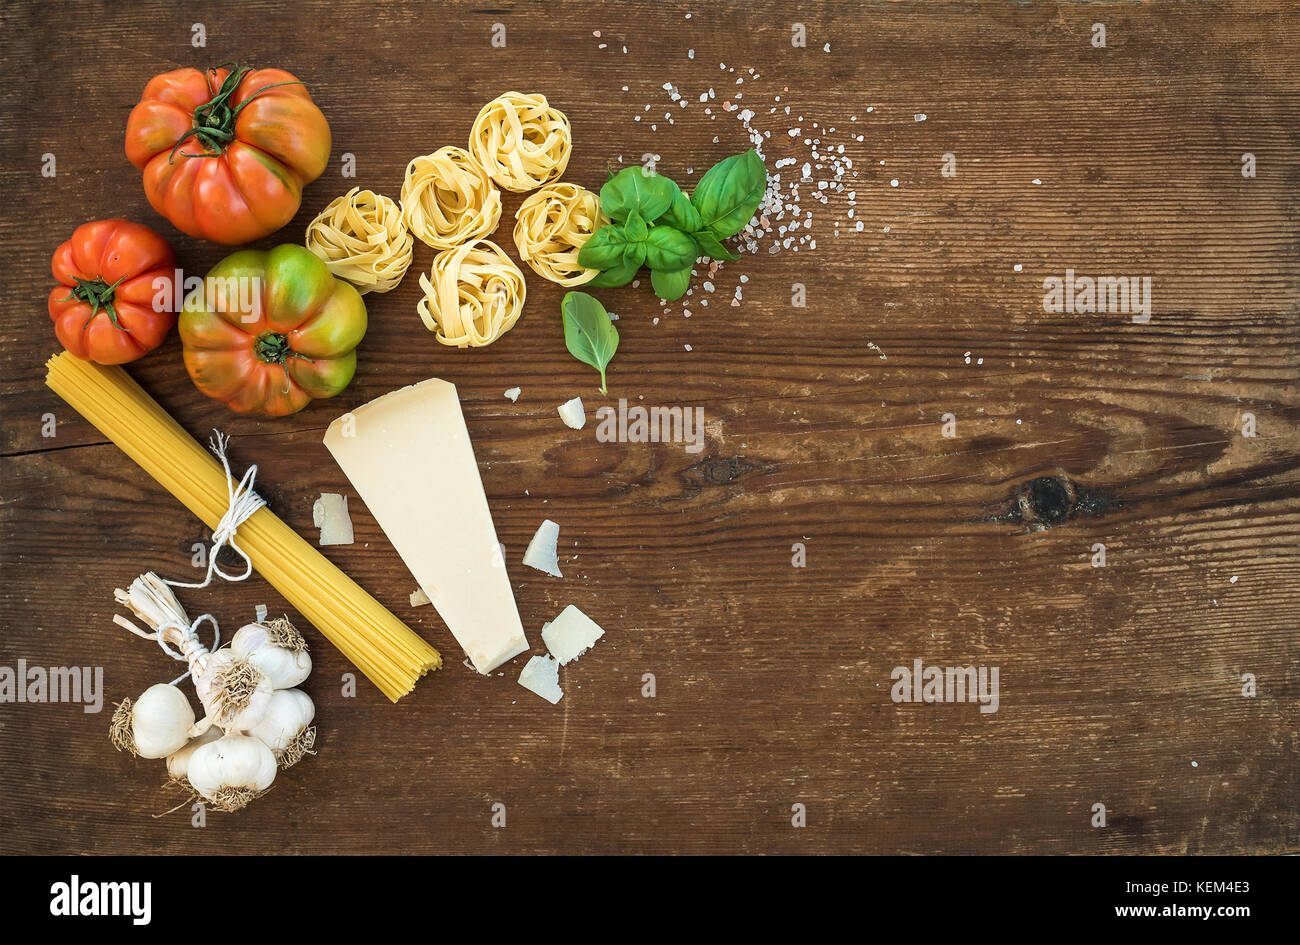 Zutaten zum Kochen Pasta Spaghetti, Tagliatelle, Knoblauch, Parmesan, Tomaten und frischem Basilikum auf rustikalen Holzmöbeln Hintergrund, Ansicht von oben, kopieren. Stockfoto